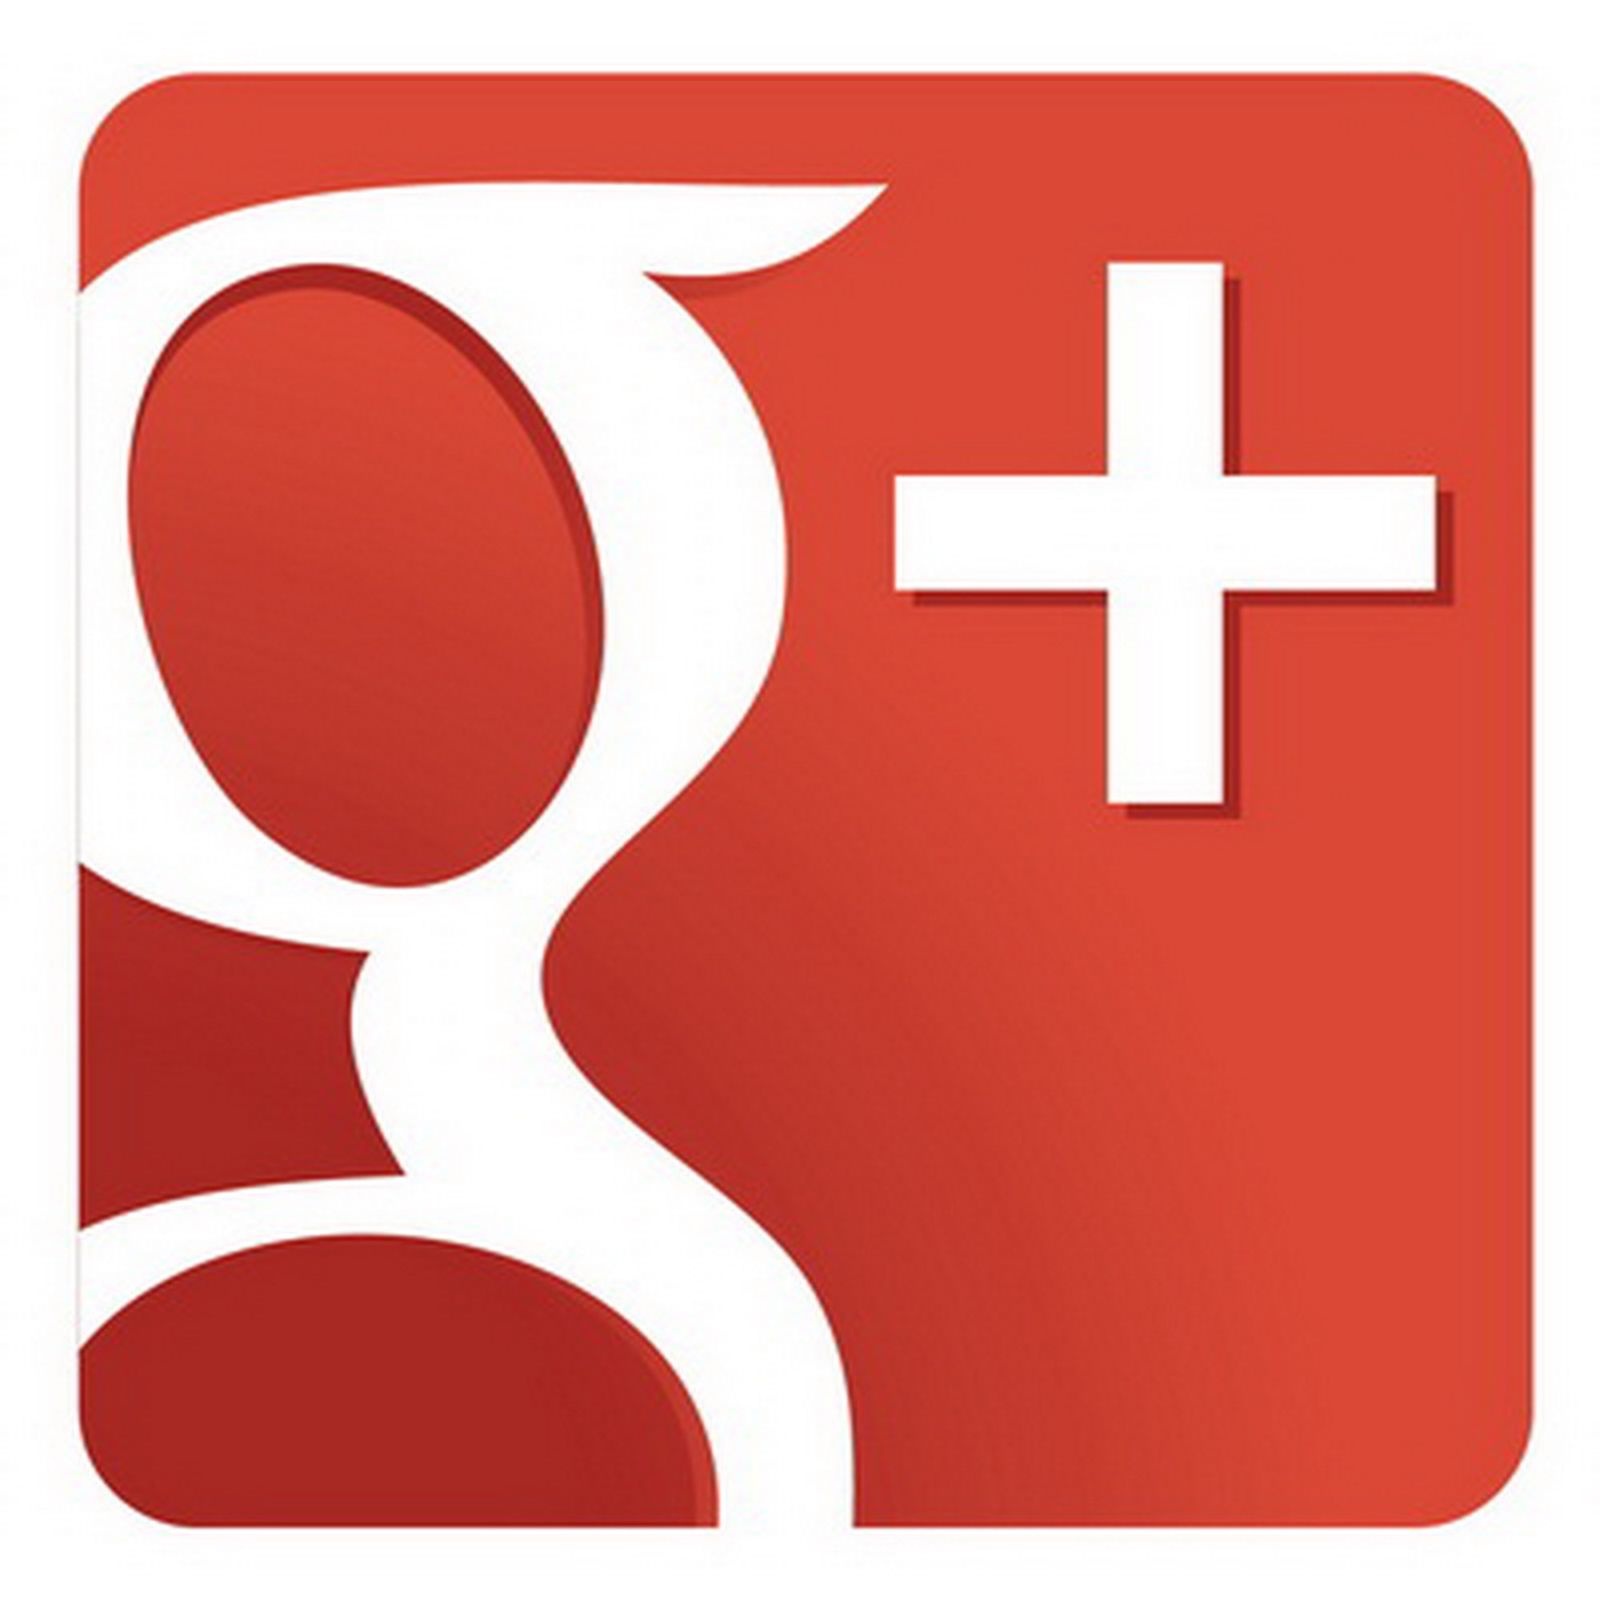 Logo von Googles sozialem Netzwerk Google+